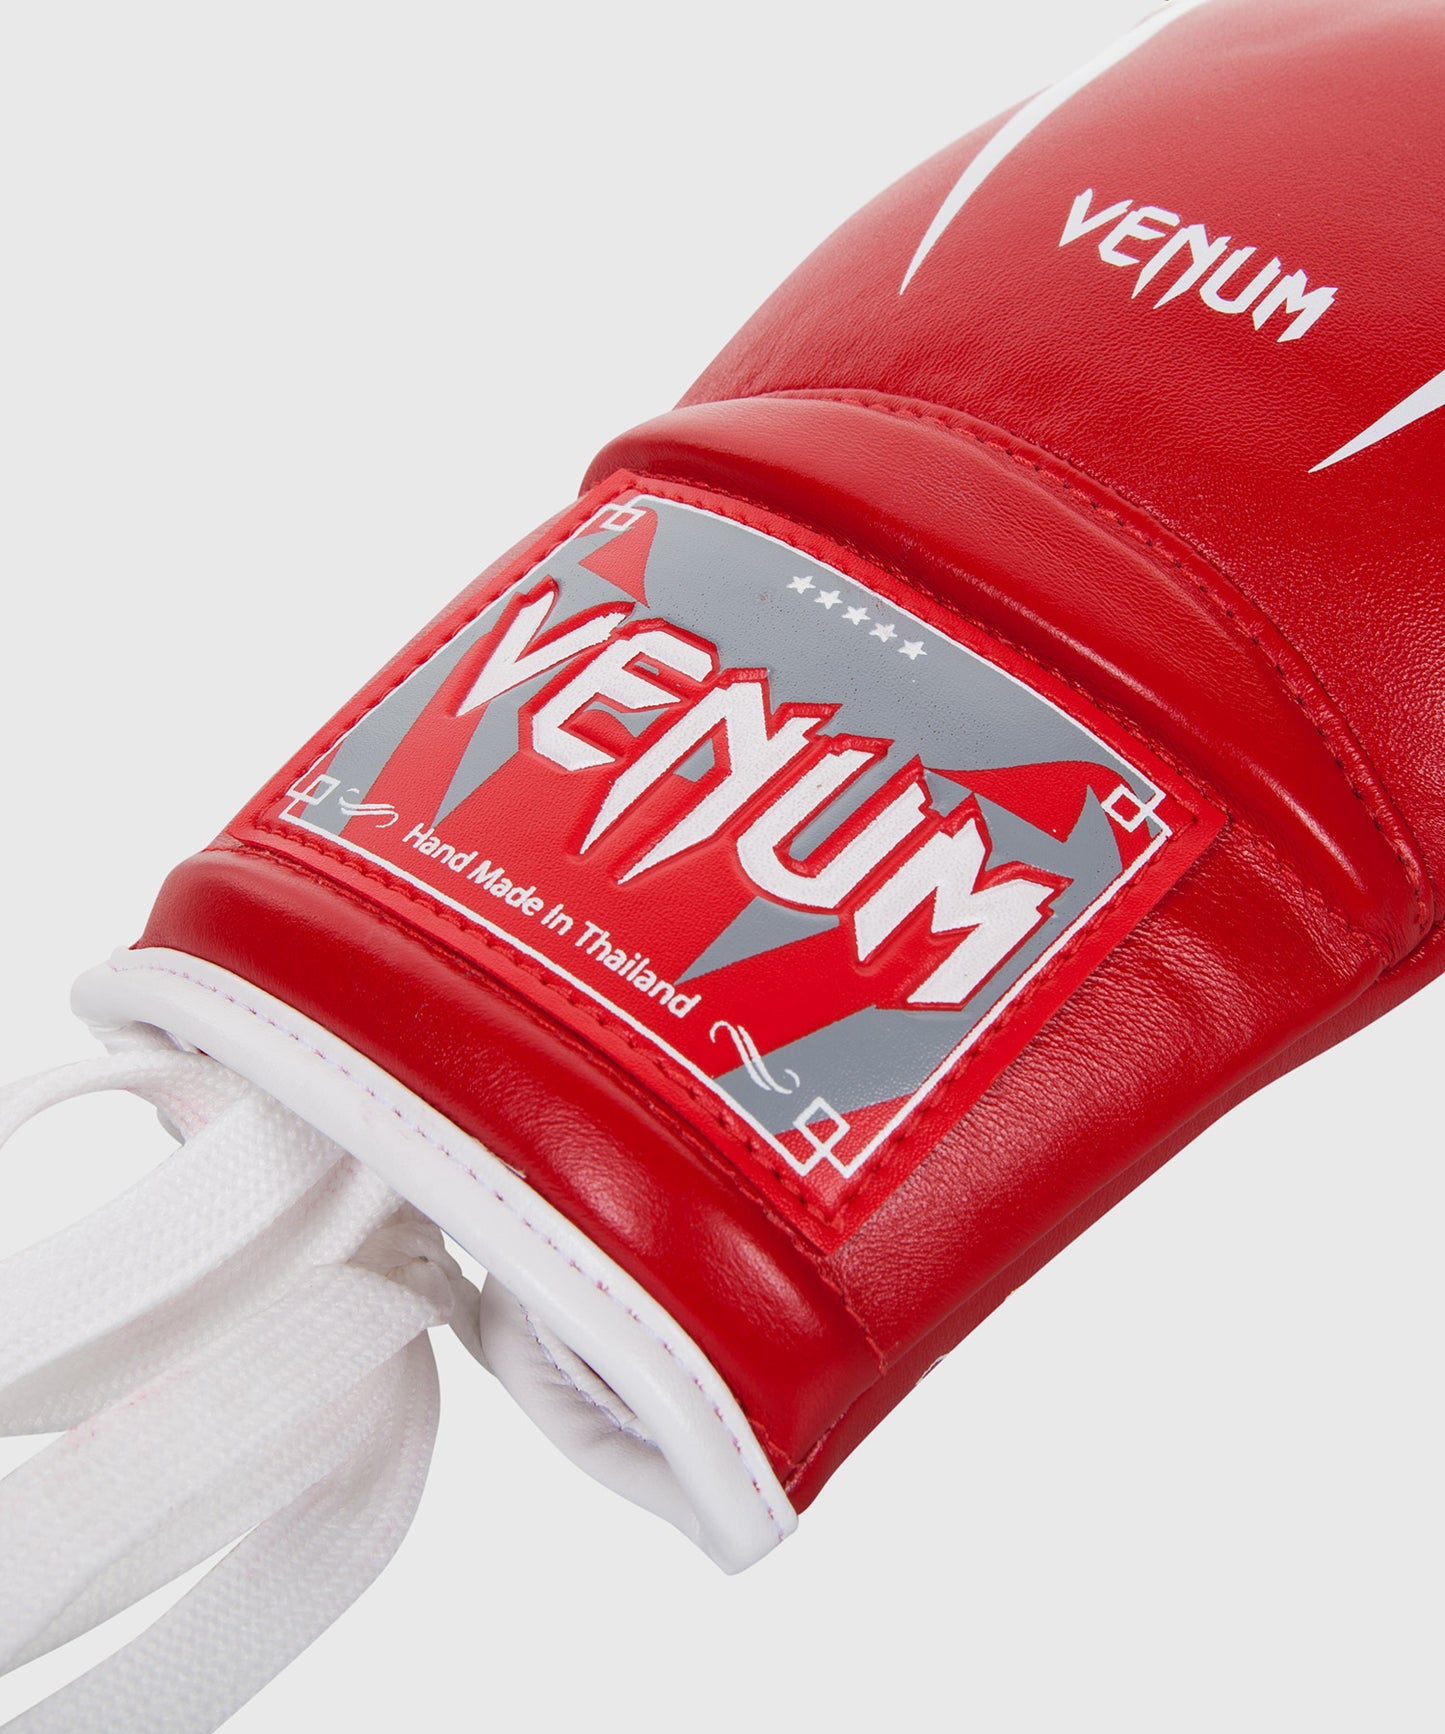 Gants de boxe à lacets Venum Giant 3.0 - Cuir Nappa - Gants de boxe